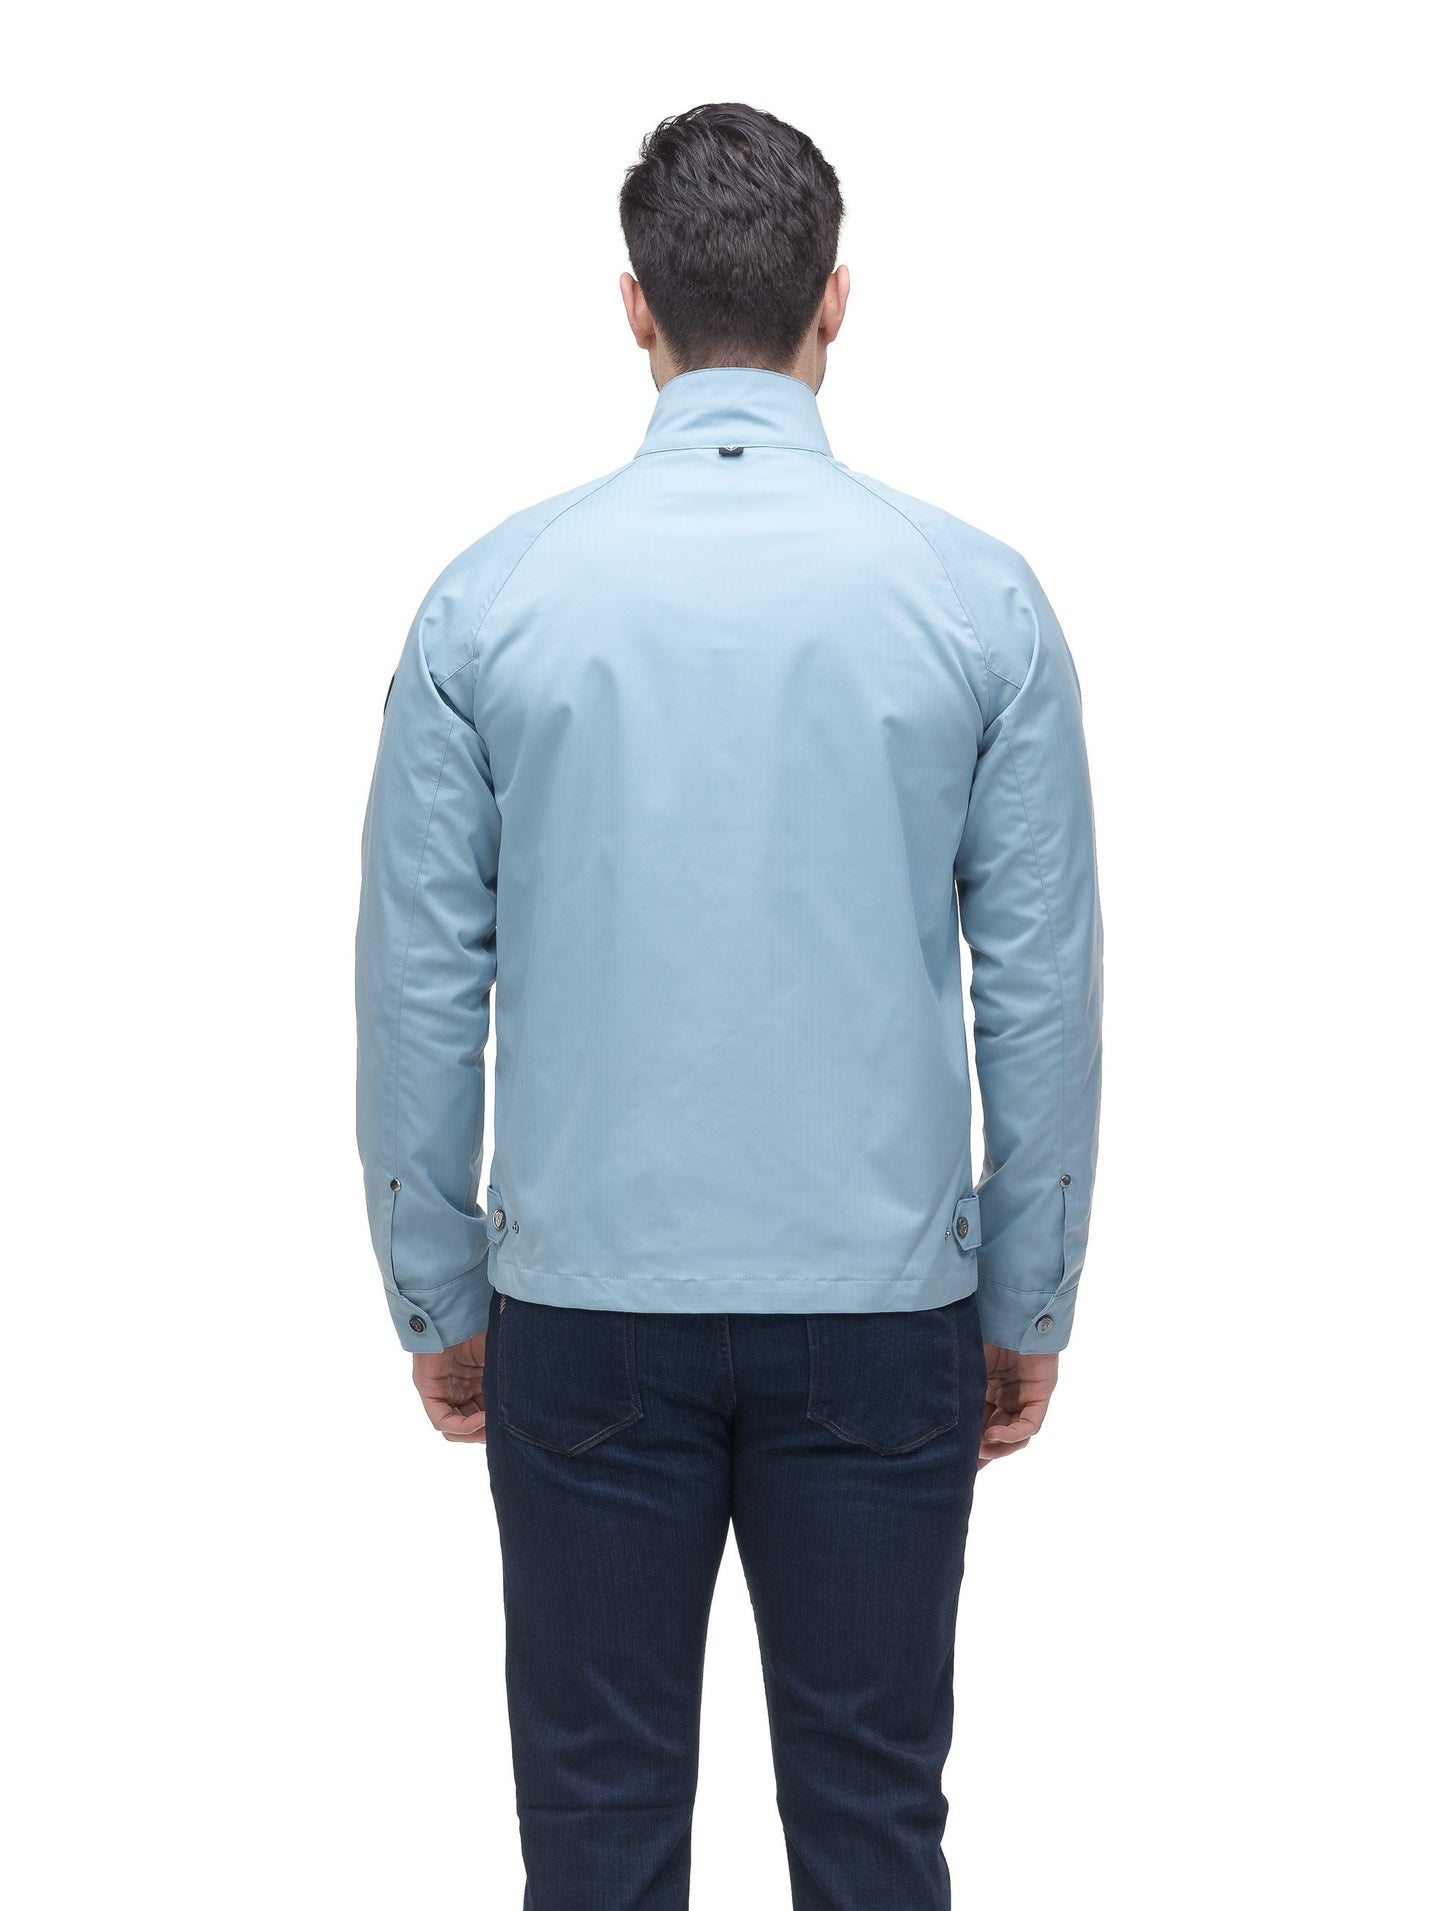 Men's zip up racer jacket in Slate Blue